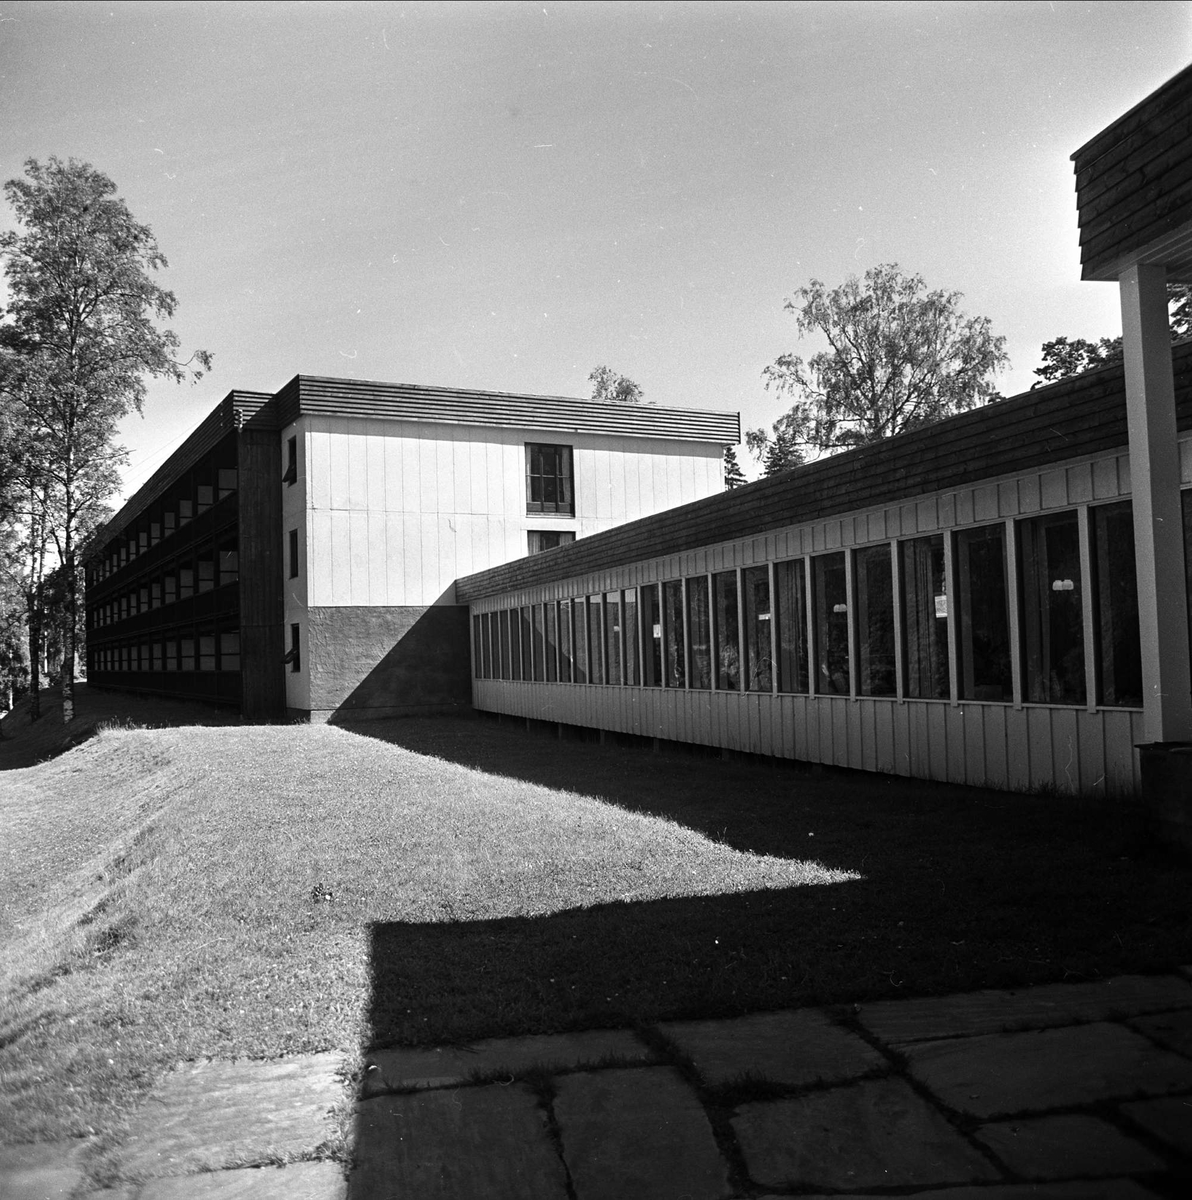 Stemning før regatta på Hankø, Fredrikstad, Østfold, juni 1964. Offentlig bygning?.